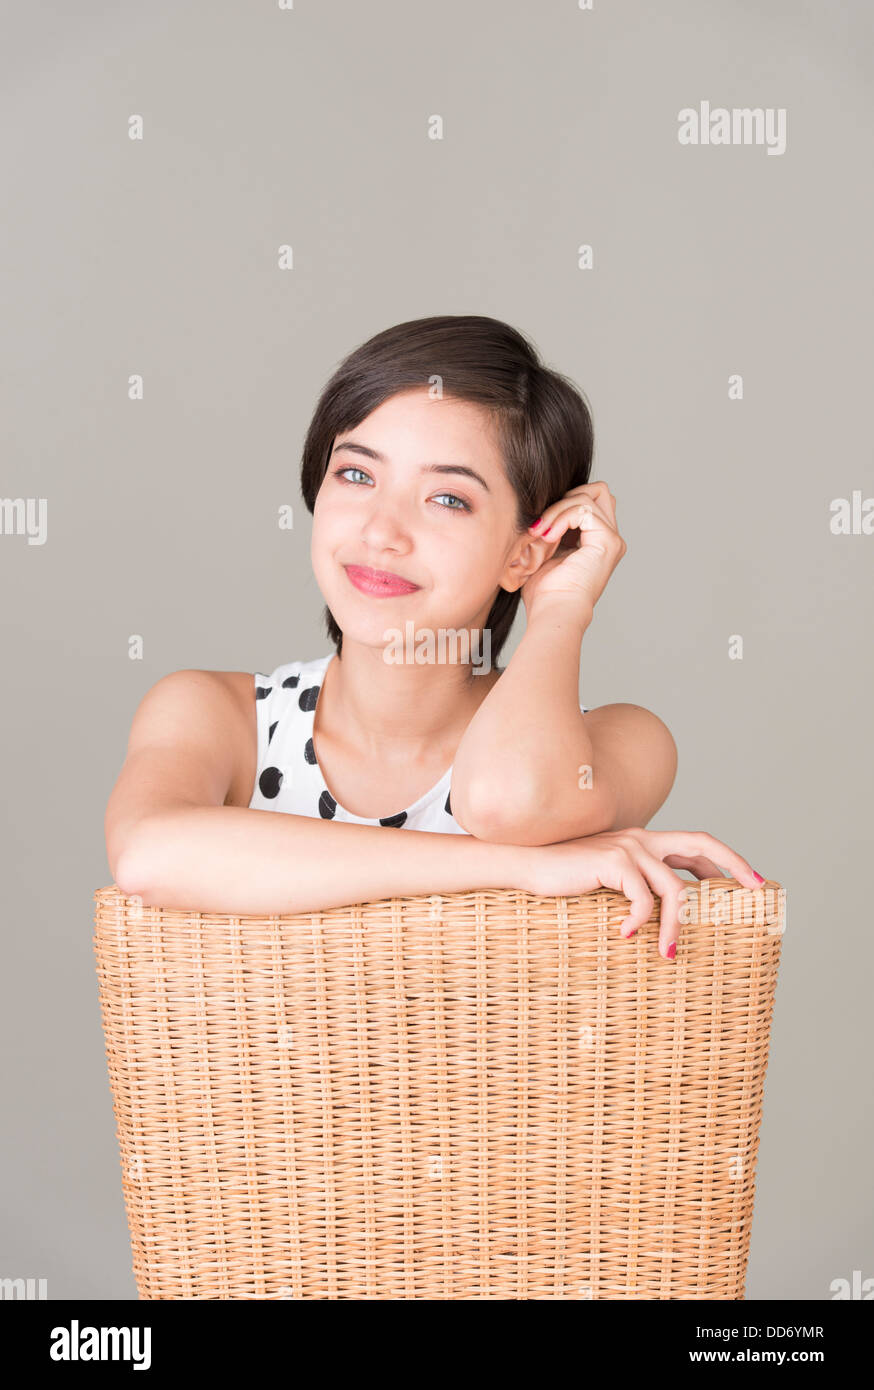 Fiducioso giovane donna seduta in poltrona guardando la fotocamera e sorridente Foto Stock